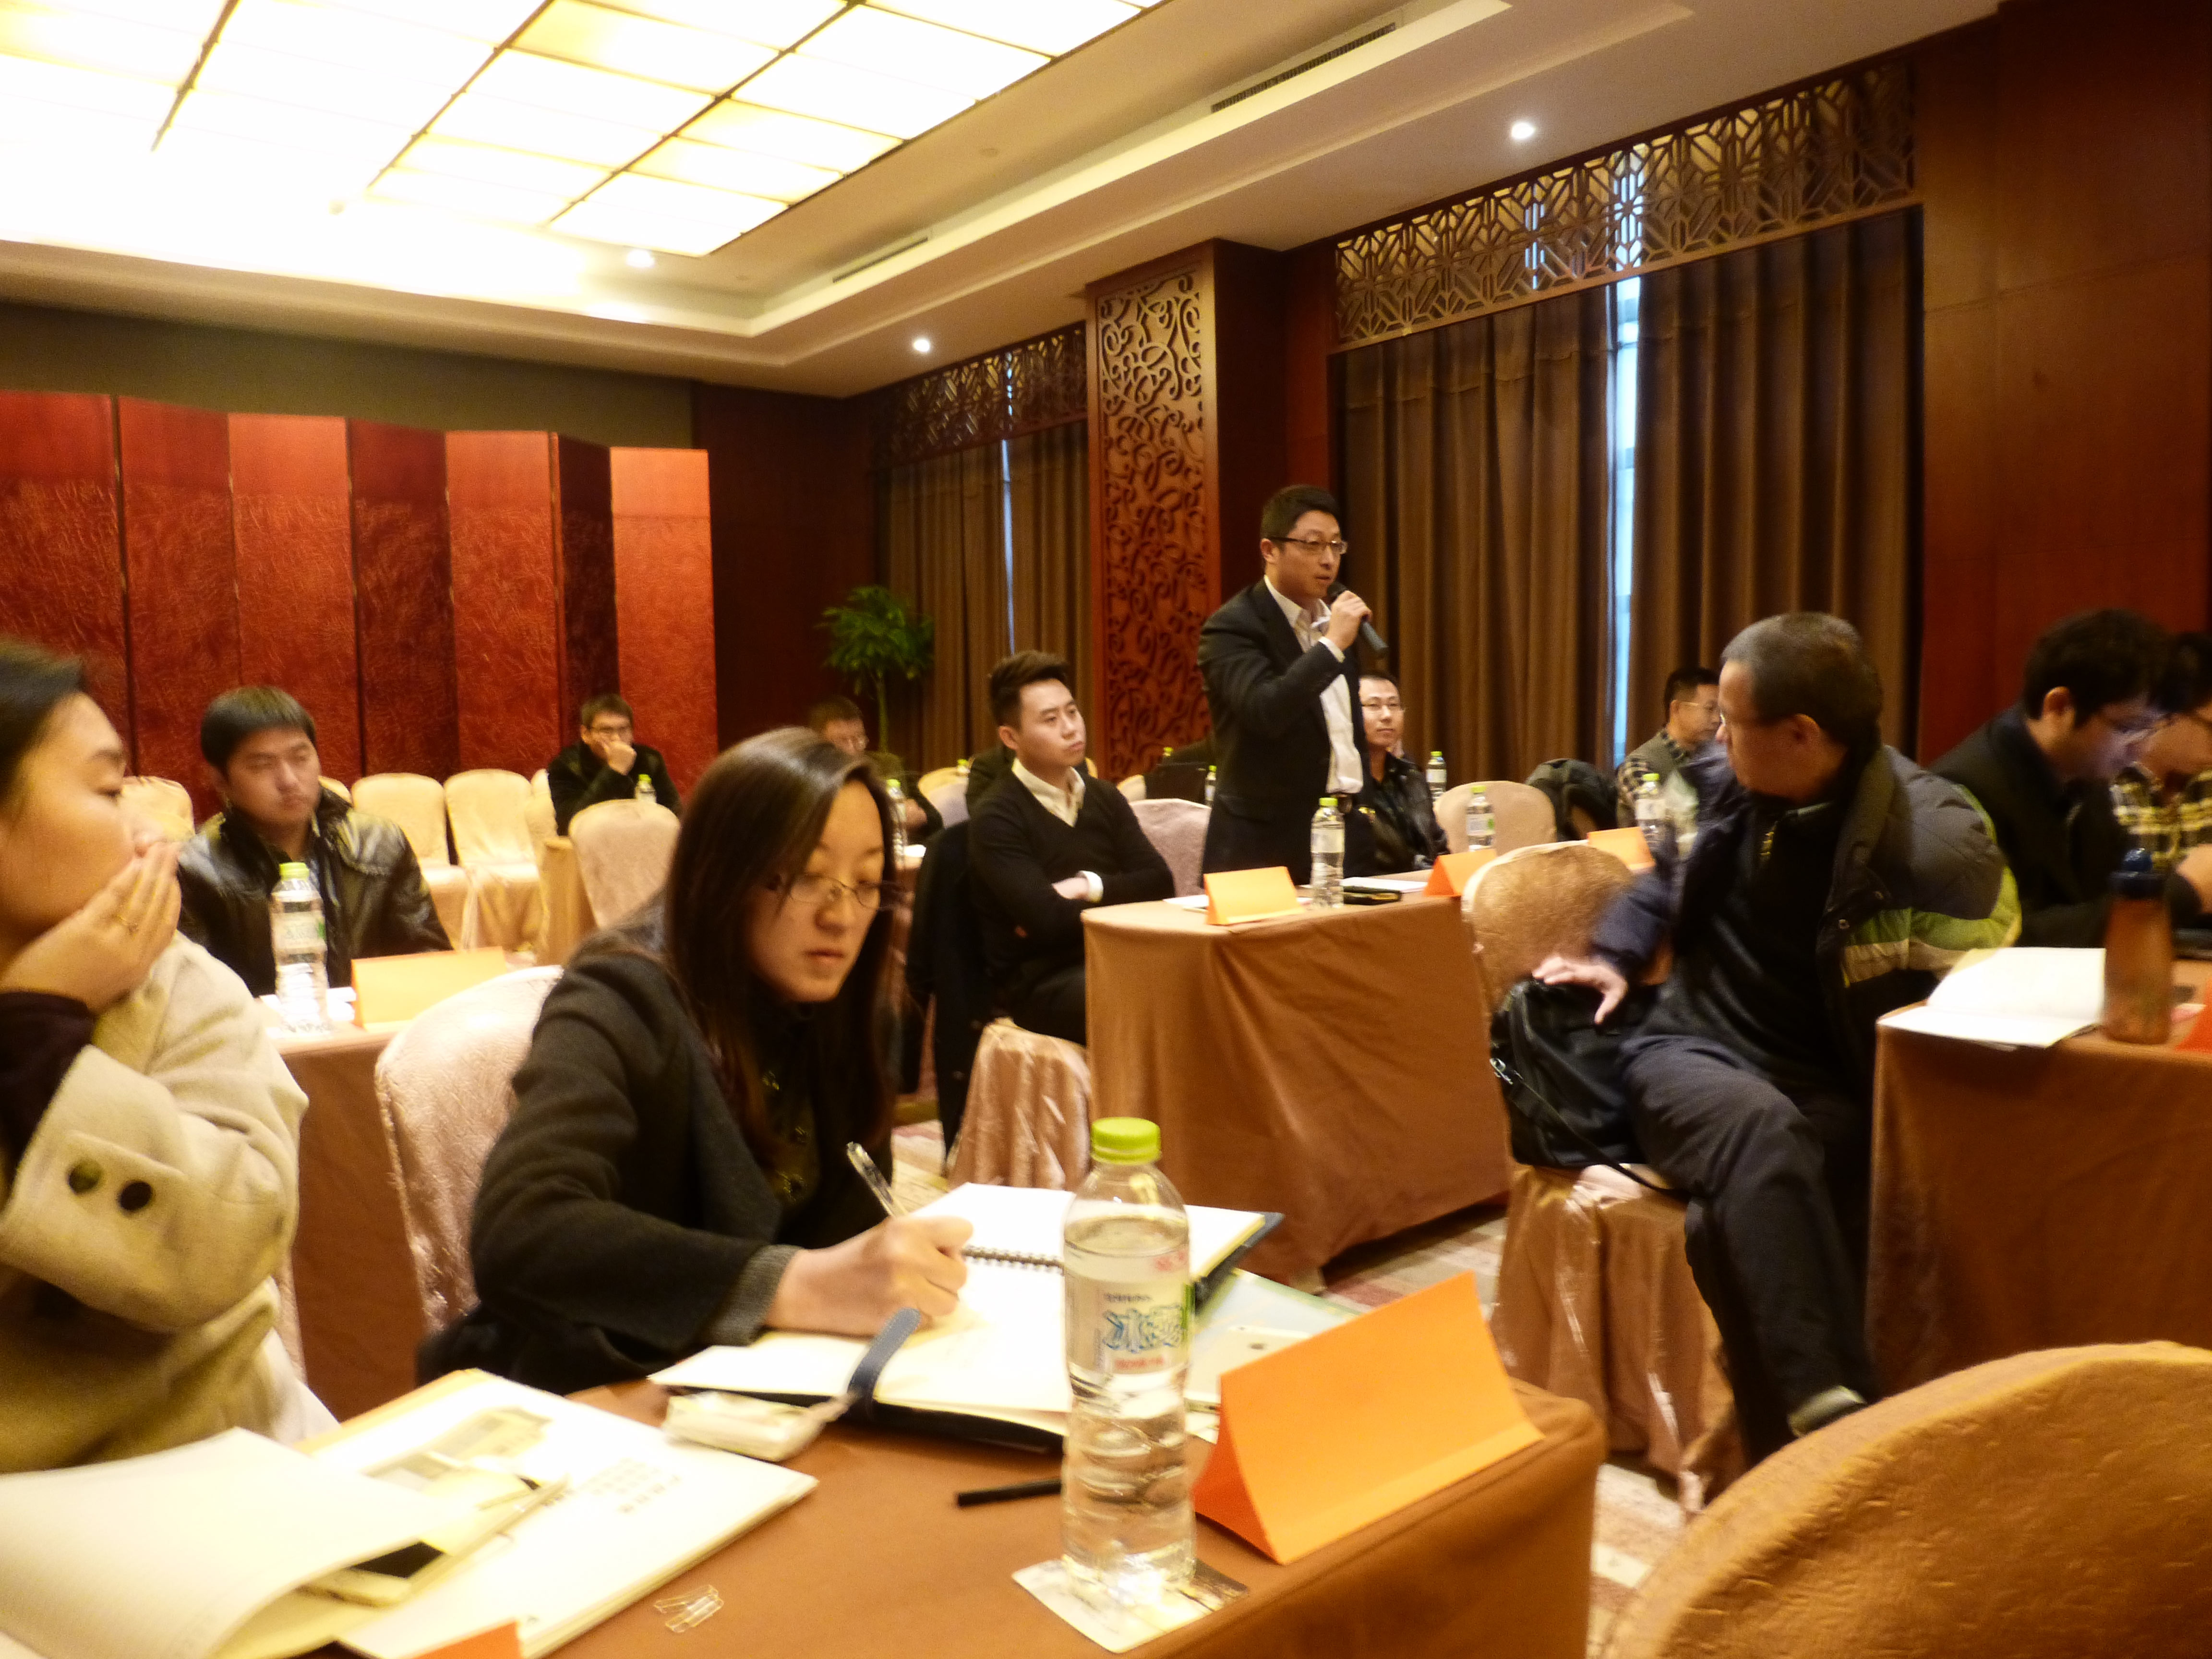 2014年度本德尔中国代理商大会